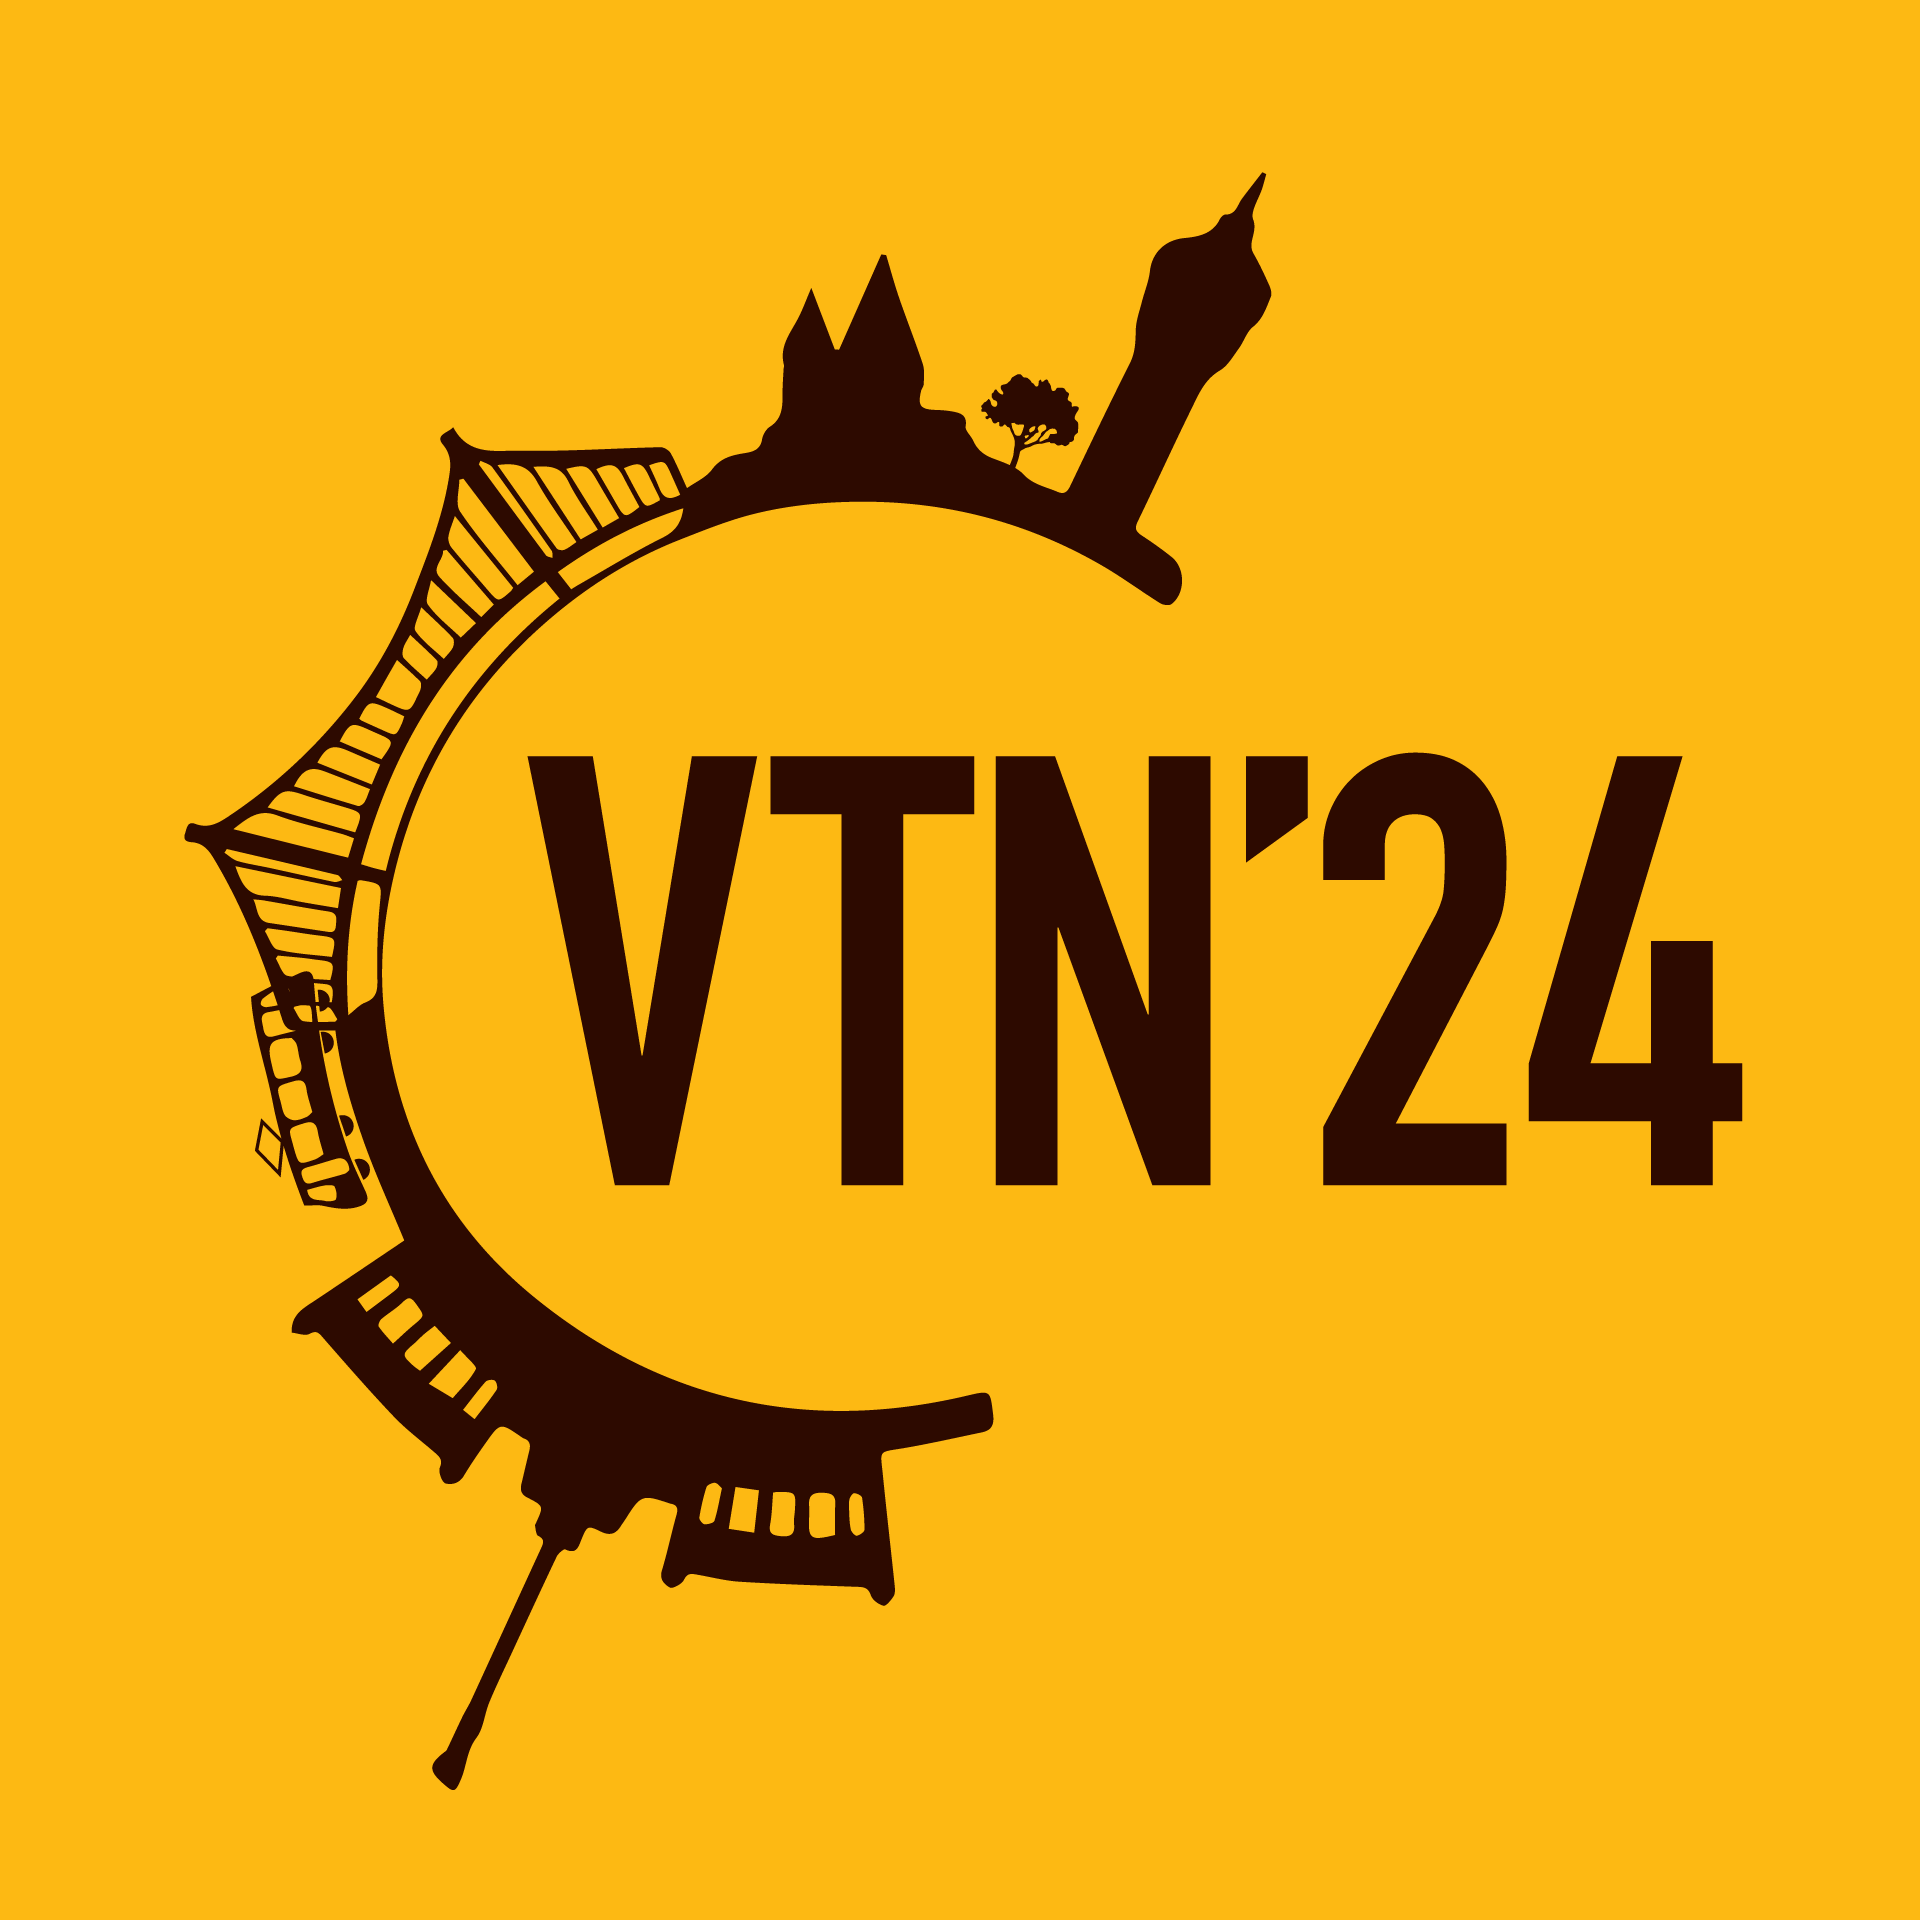 VTN'23